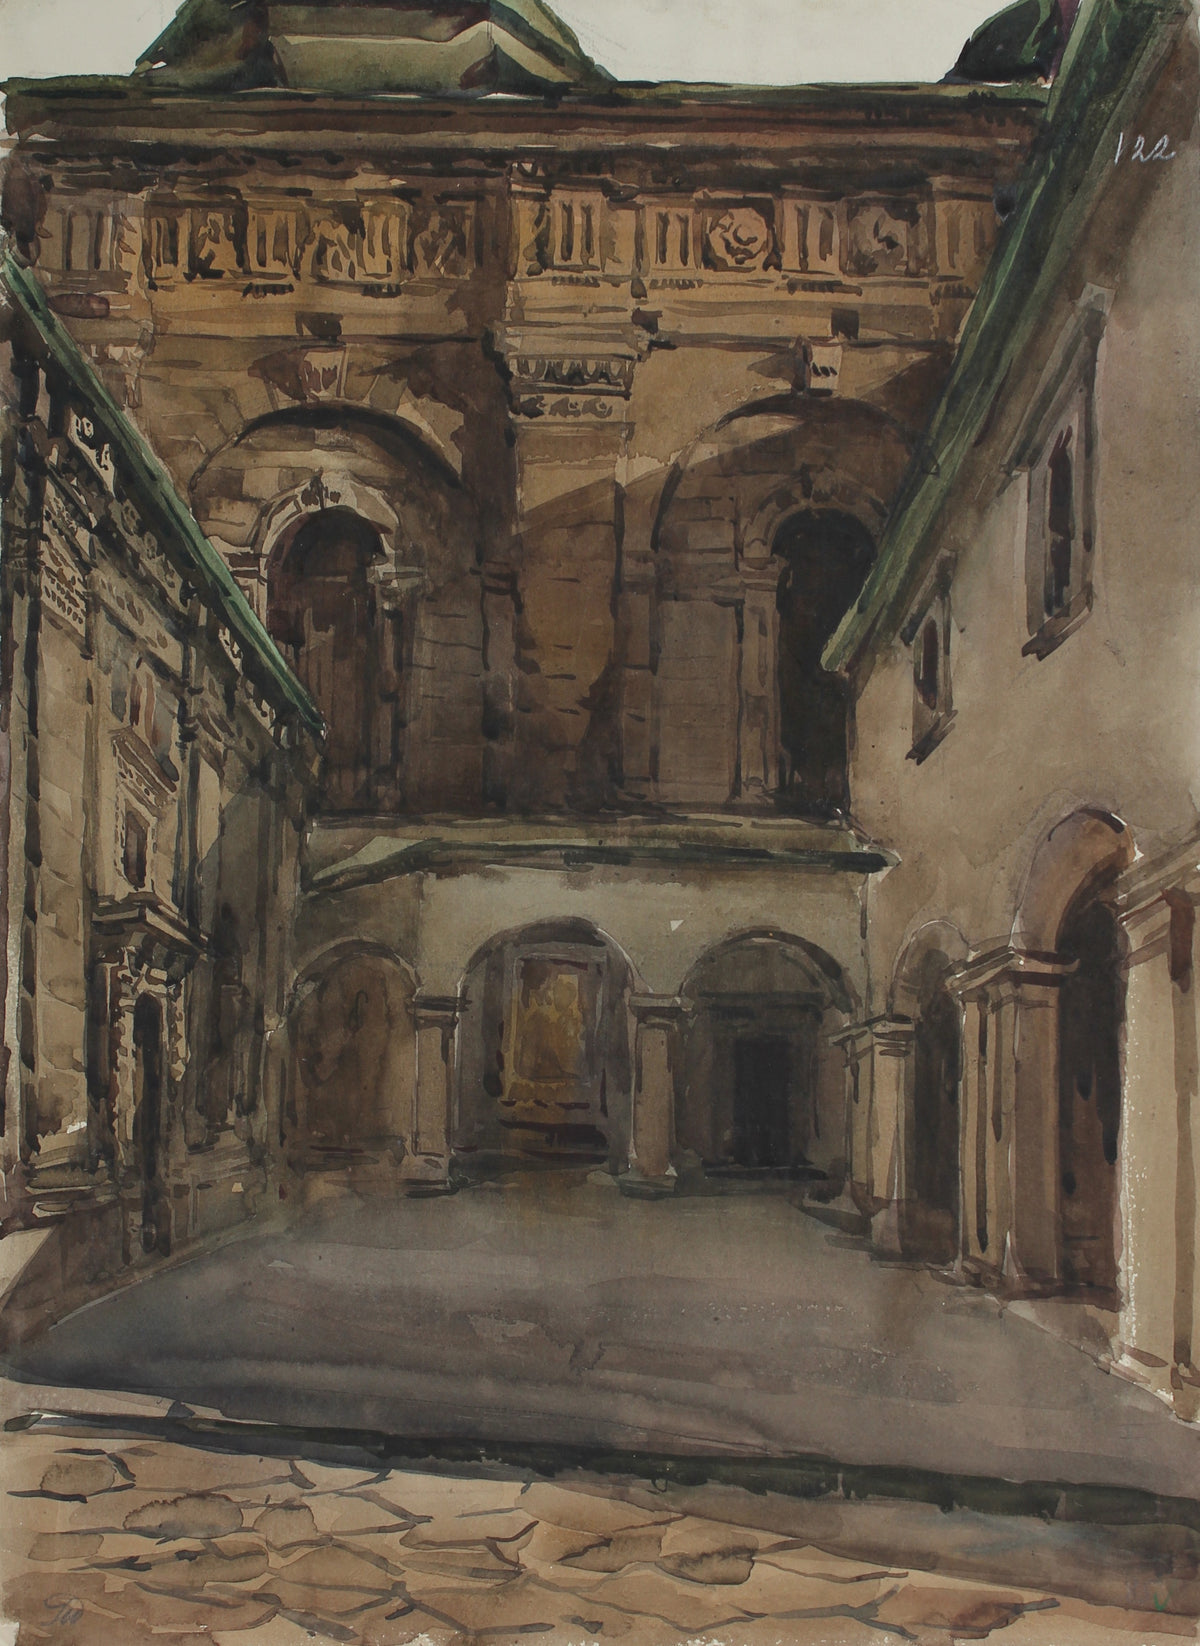 &lt;i&gt;Cathedral Study&lt;/i&gt;&lt;br&gt;1960-80s Watercolor&lt;br&gt;V. Burda&lt;br&gt;&lt;br&gt;#A3015